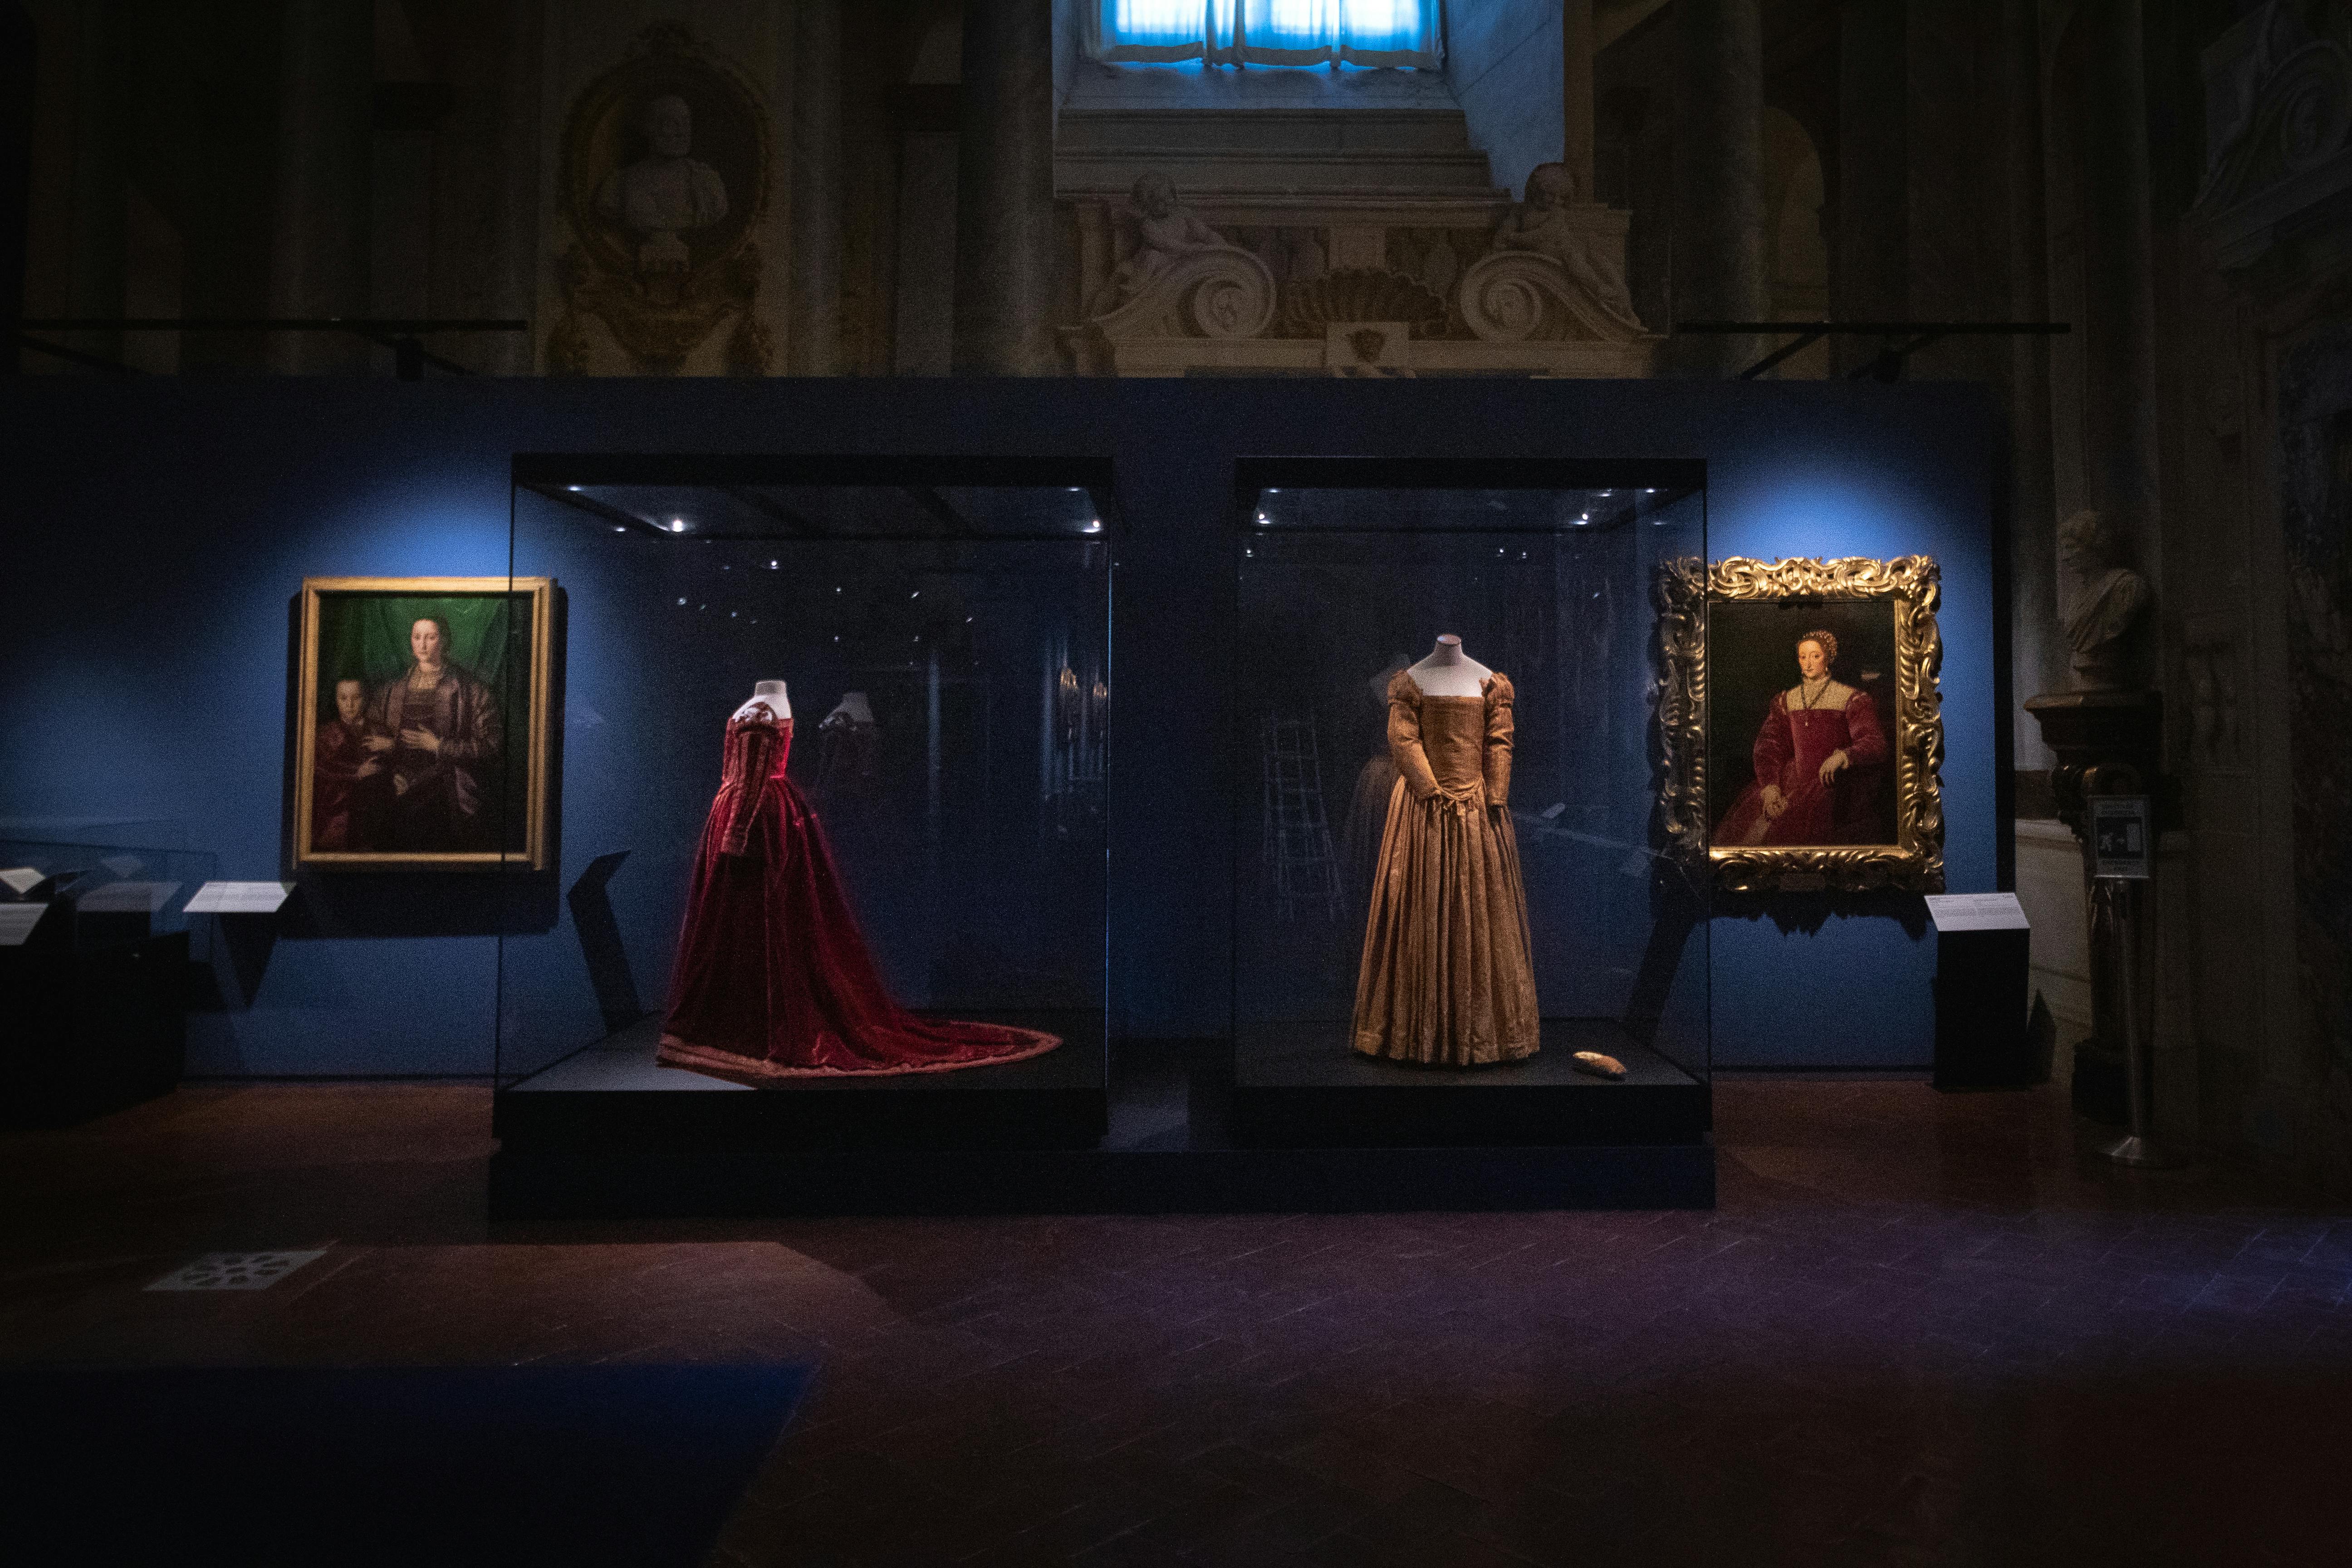 Eleonora di Toledo e l'invenzione della corte dei Medici a Firenze